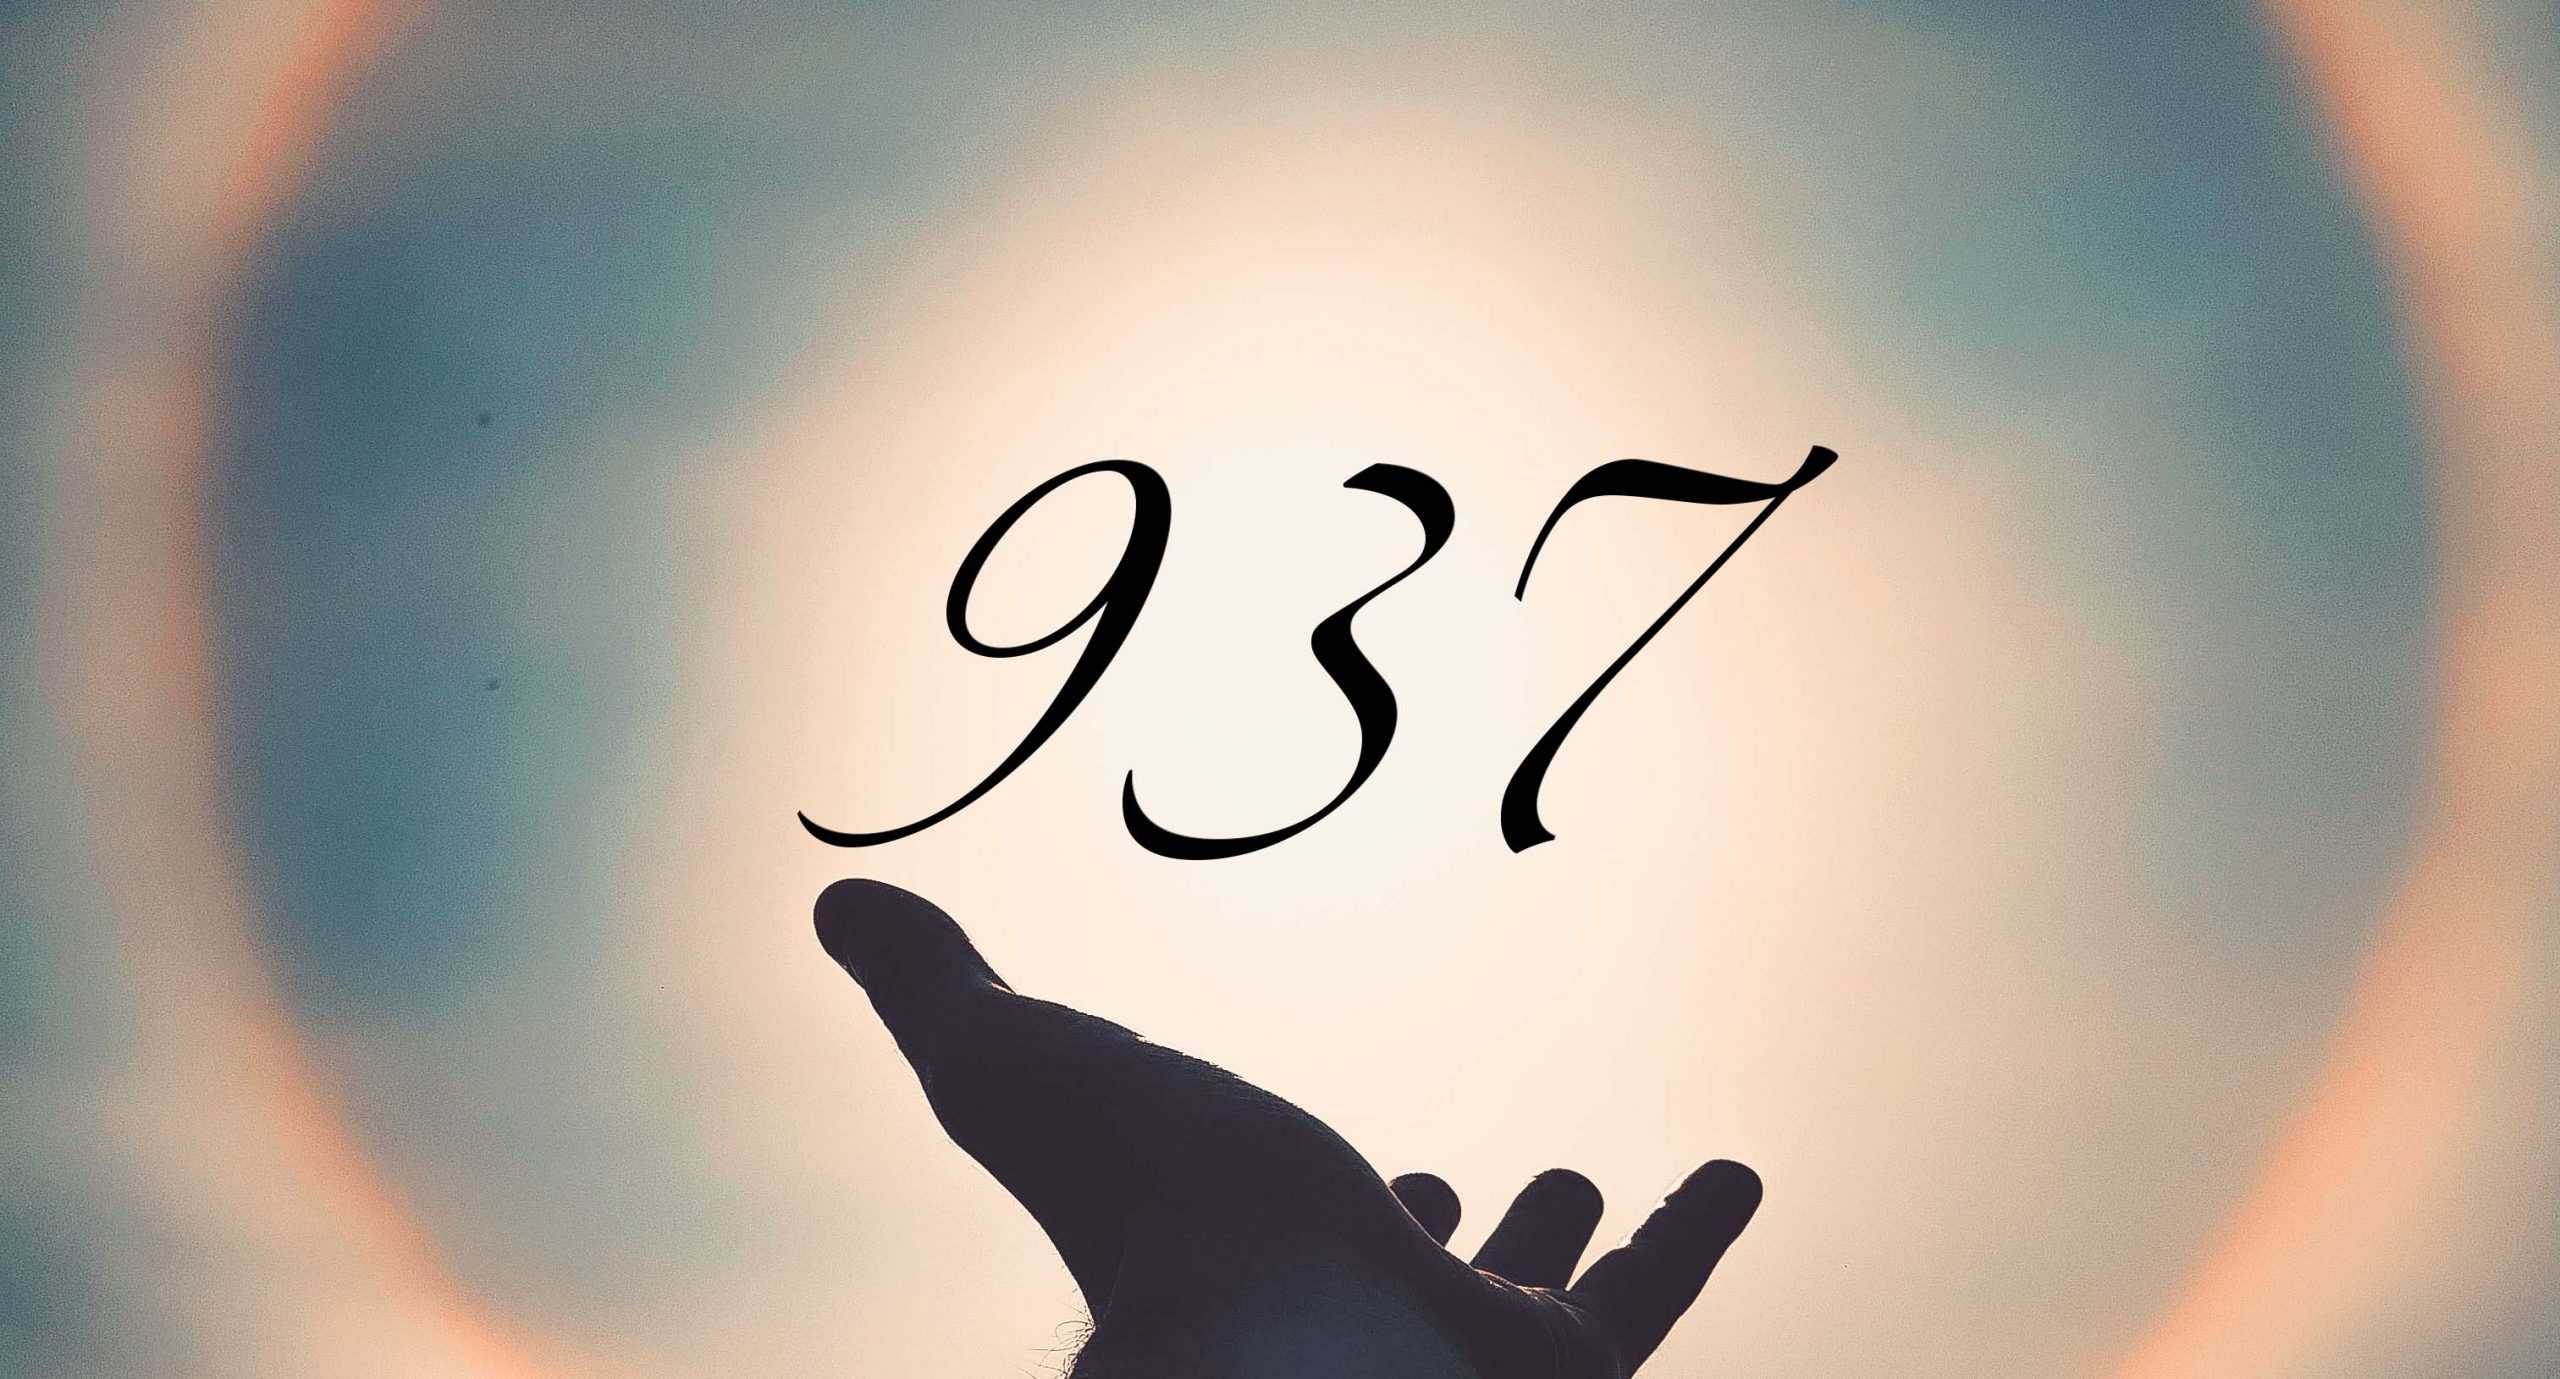 Signification du nombre 937